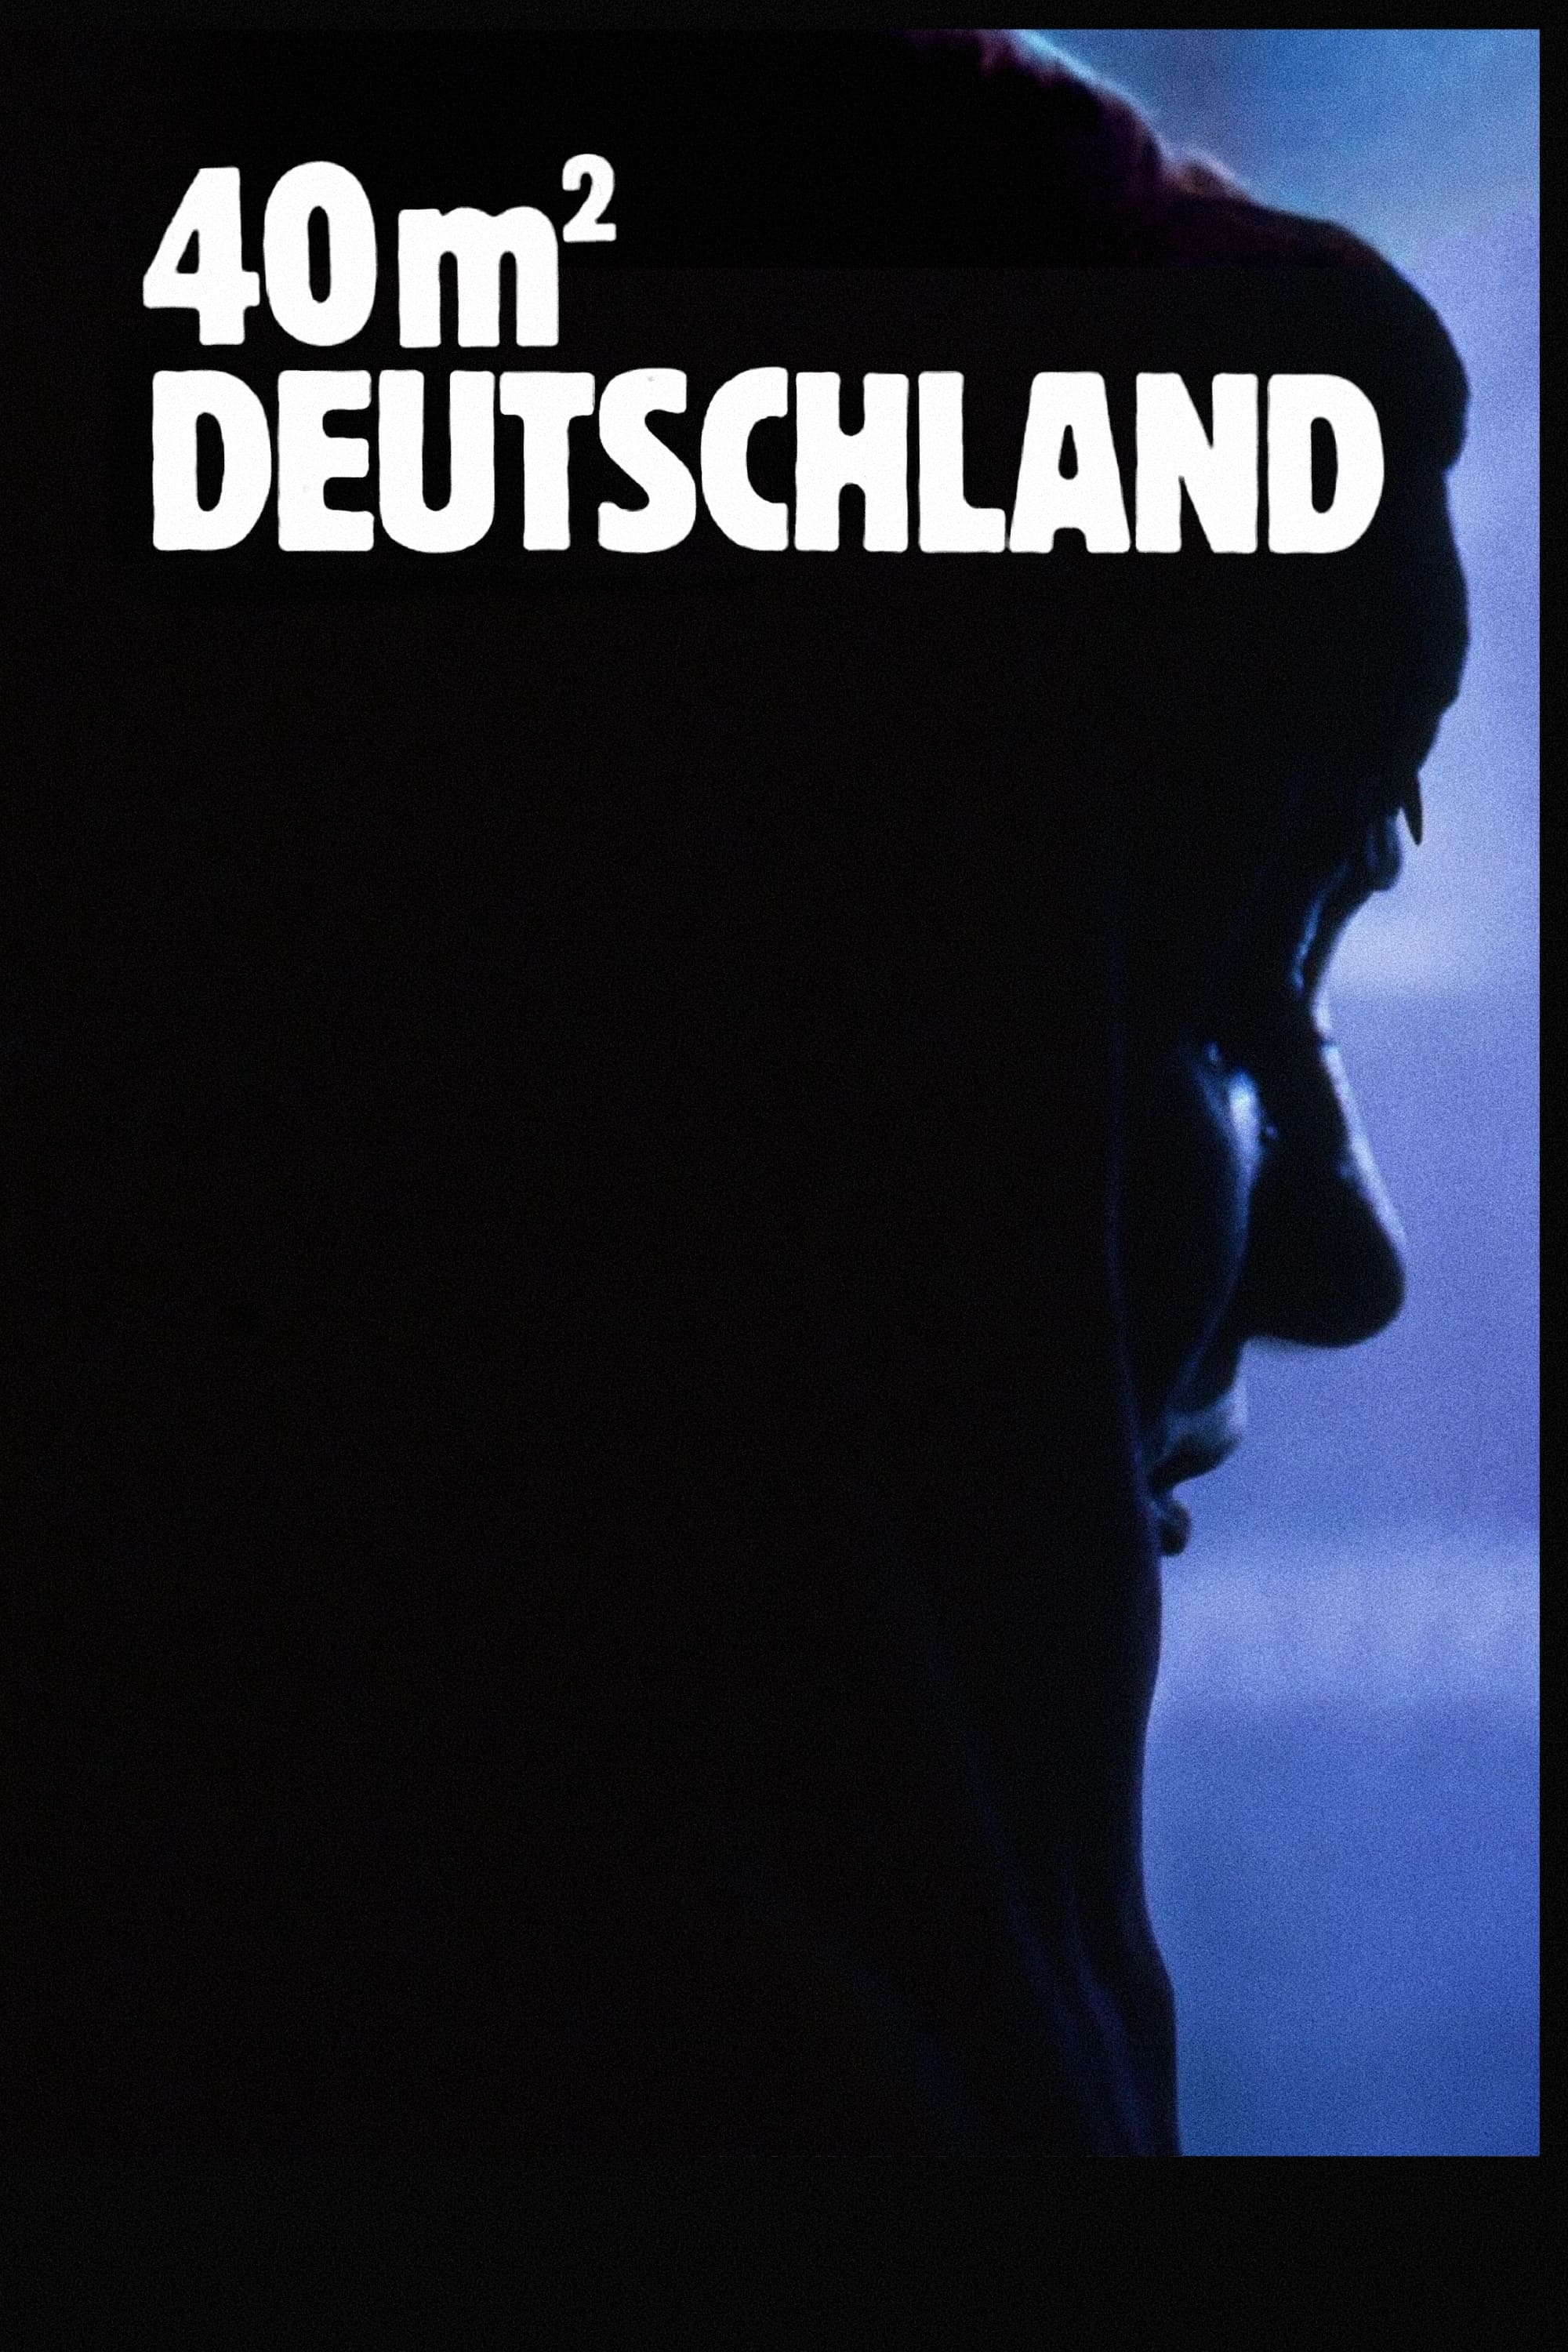 40 qm Deutschland (1986)